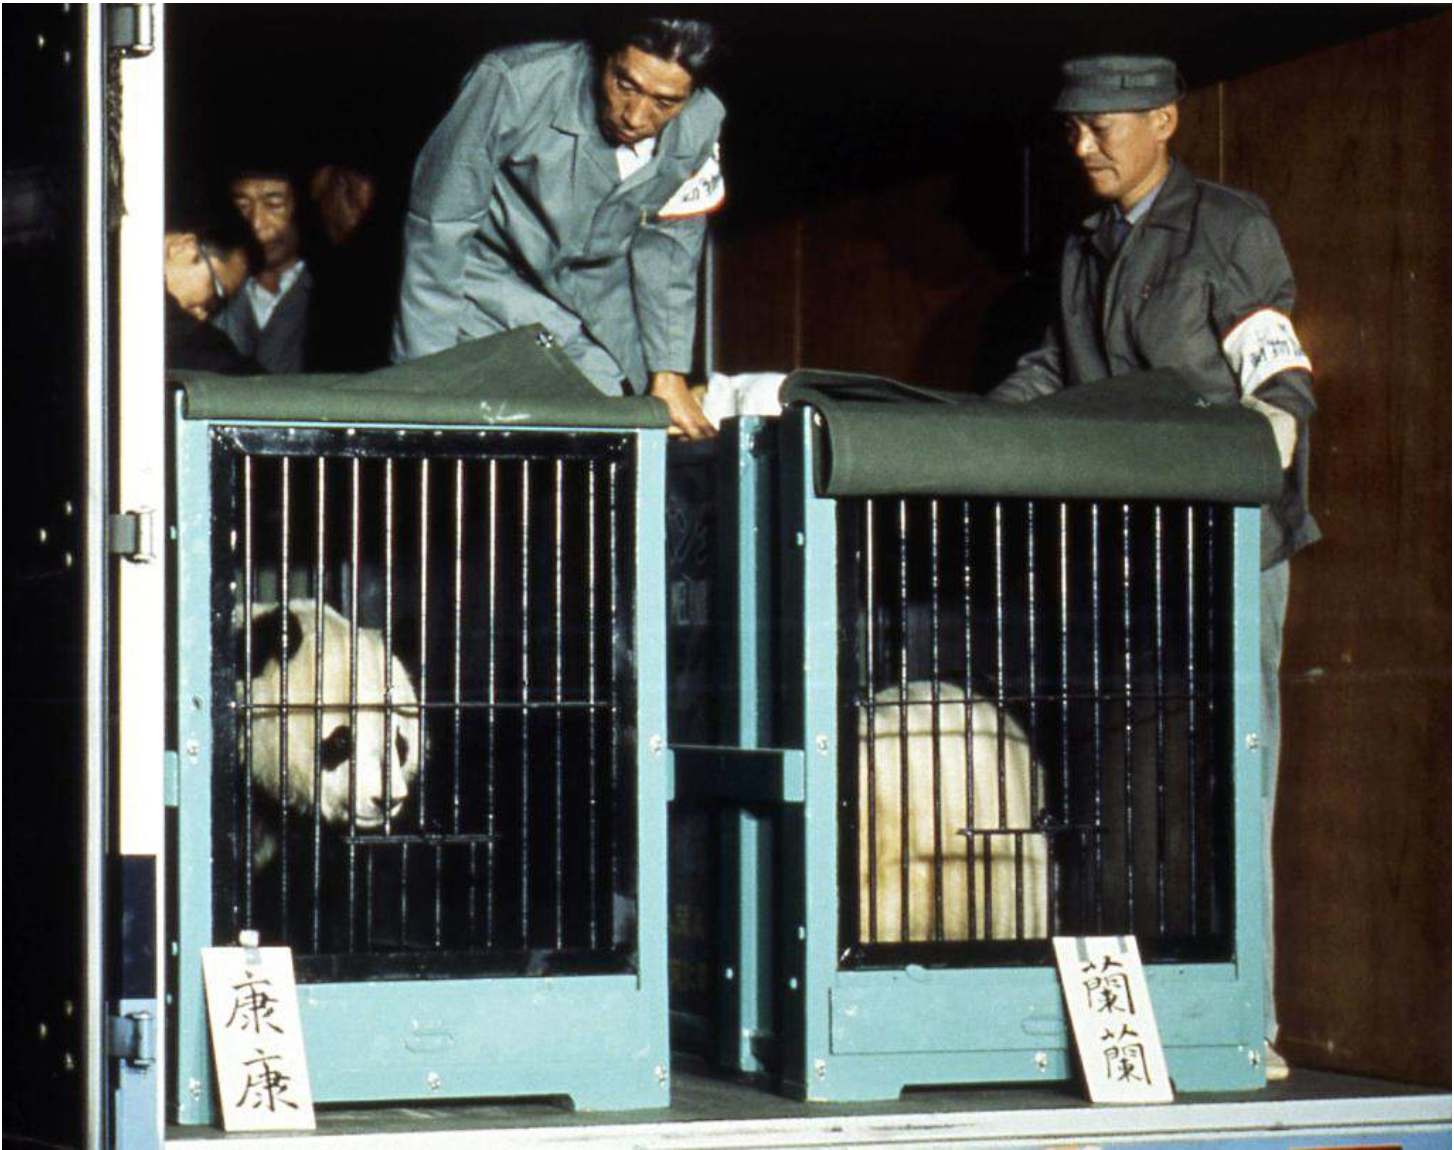 panda diplomacy